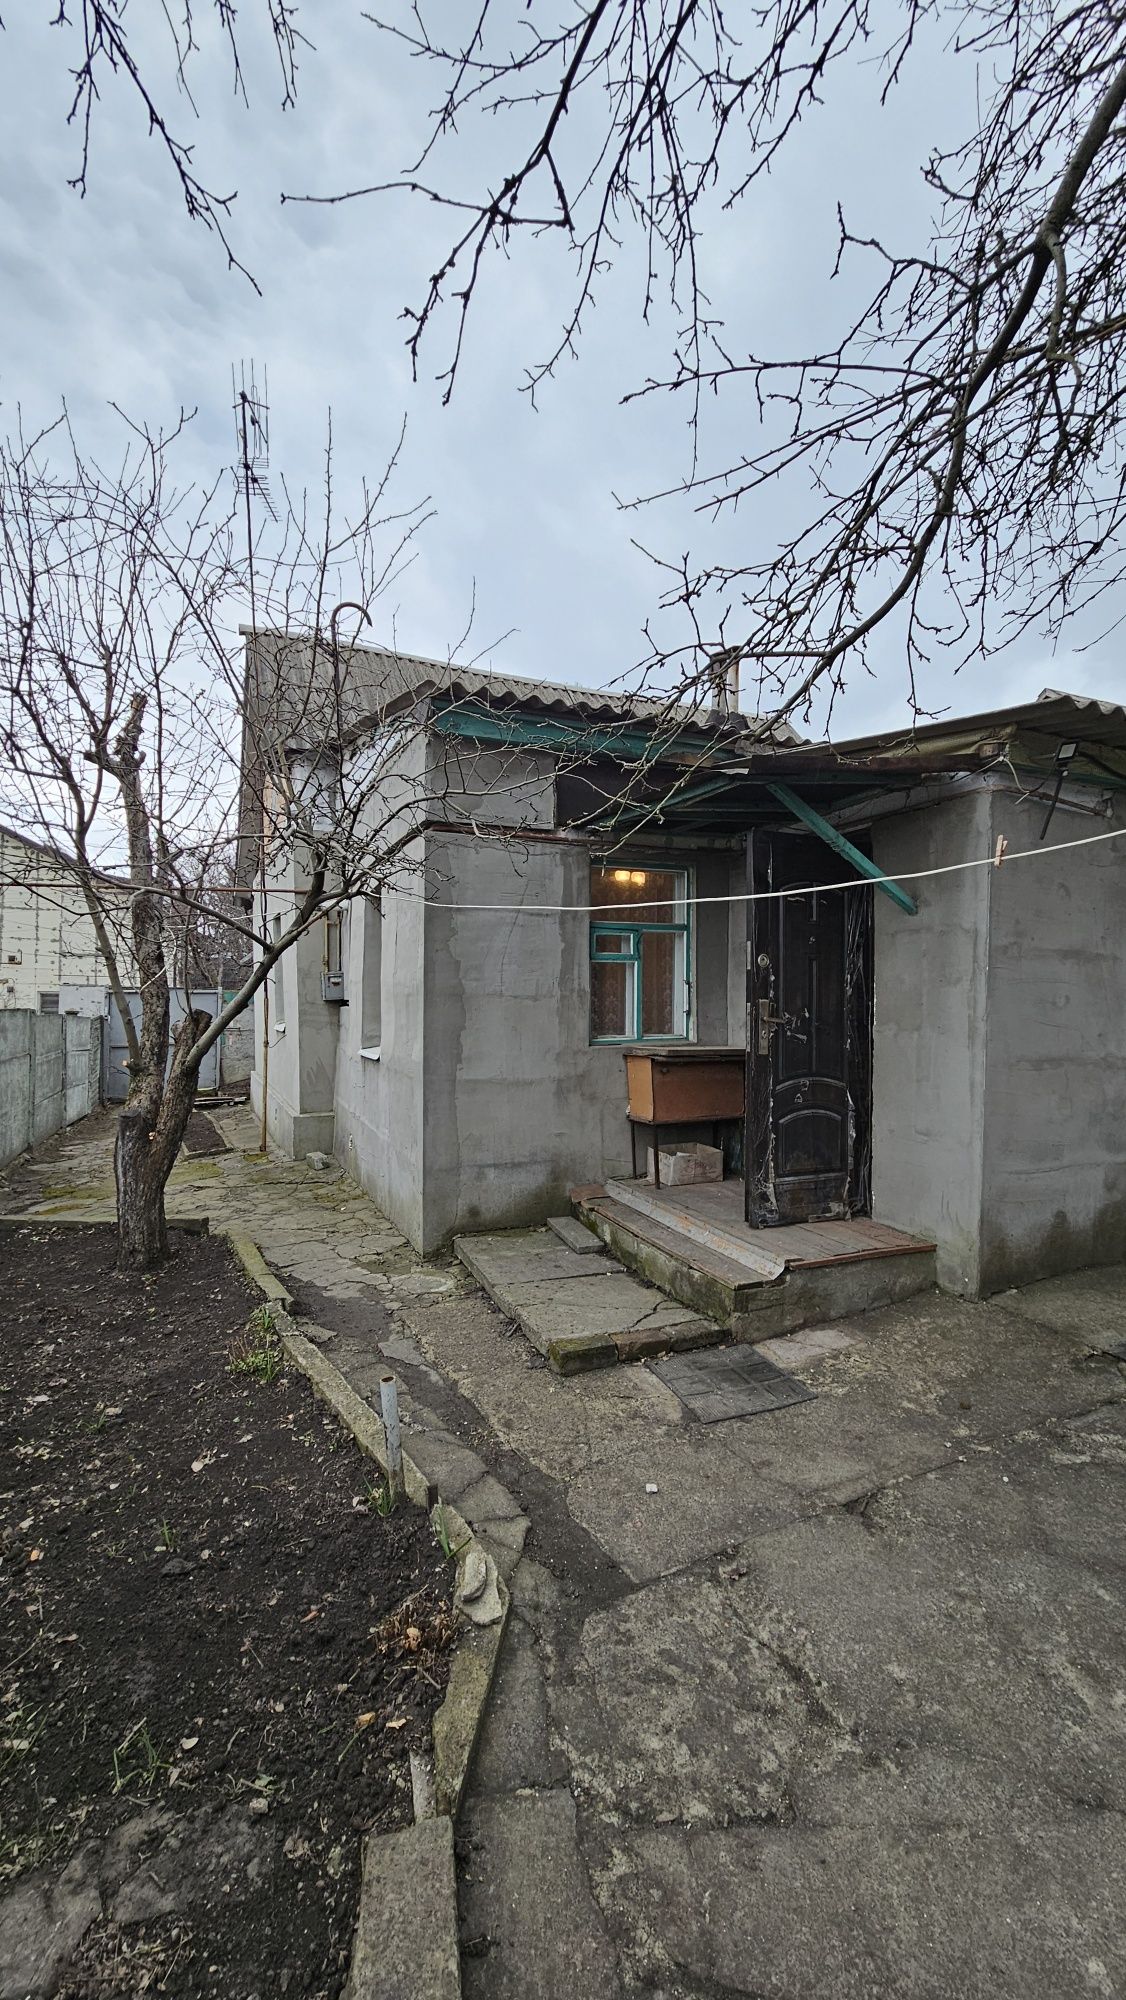 Продам дом верх Ивана Мазепы (Петровского)